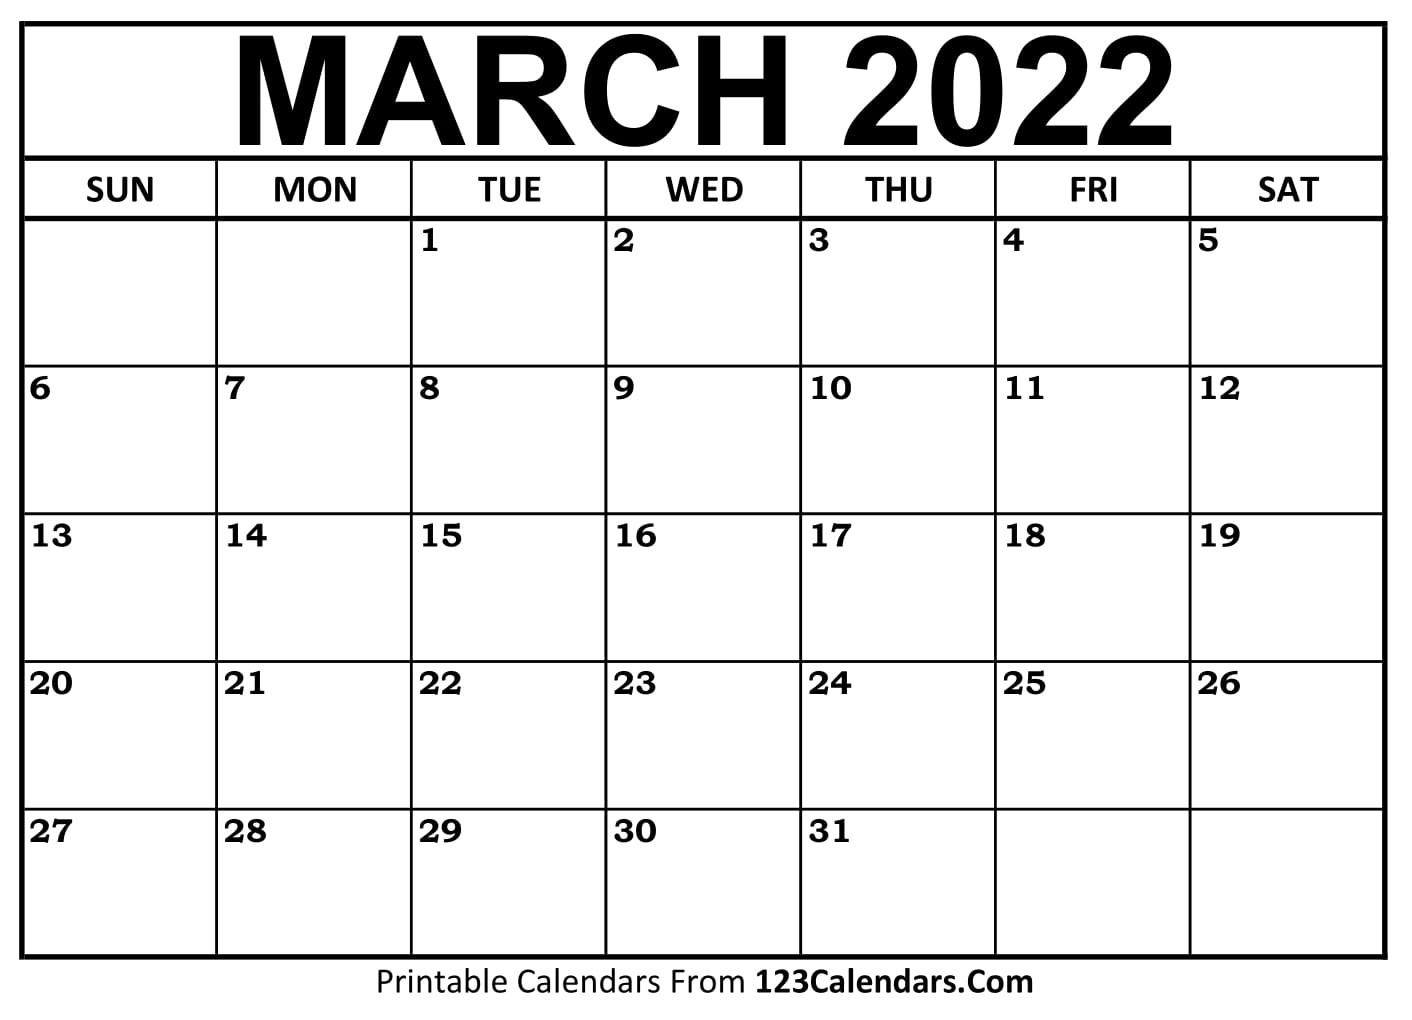 March 2022 Calendar Pdf Printable March 2022 Calendar Templates - 123Calendars.com